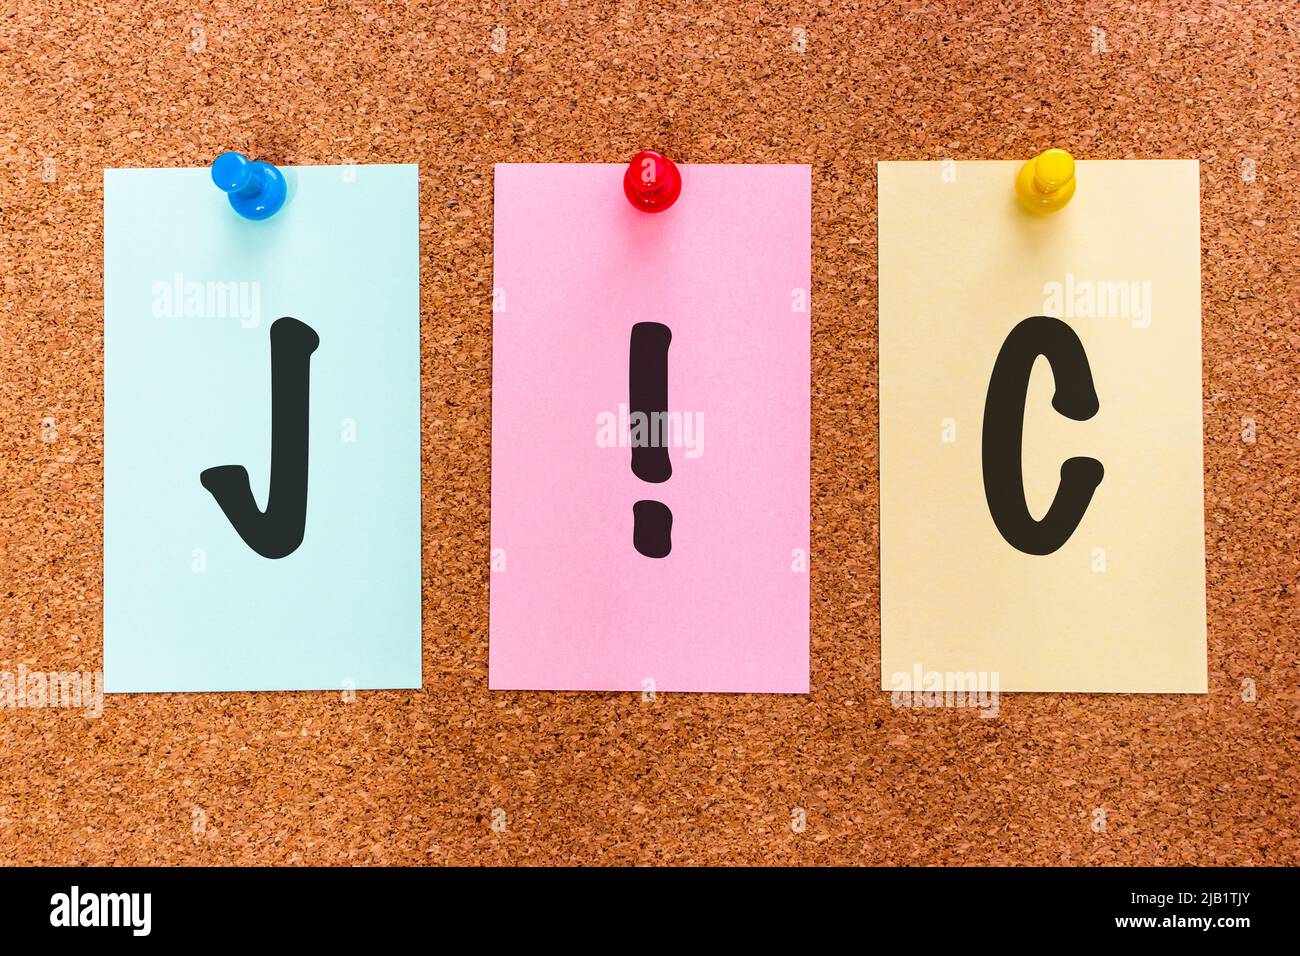 Konzeptuelle Abkürzung mit 3 Buchstaben JIC (Just in case) auf mehrfarbigen Aufklebern, die an einem Korkbrett angebracht sind. Stockfoto